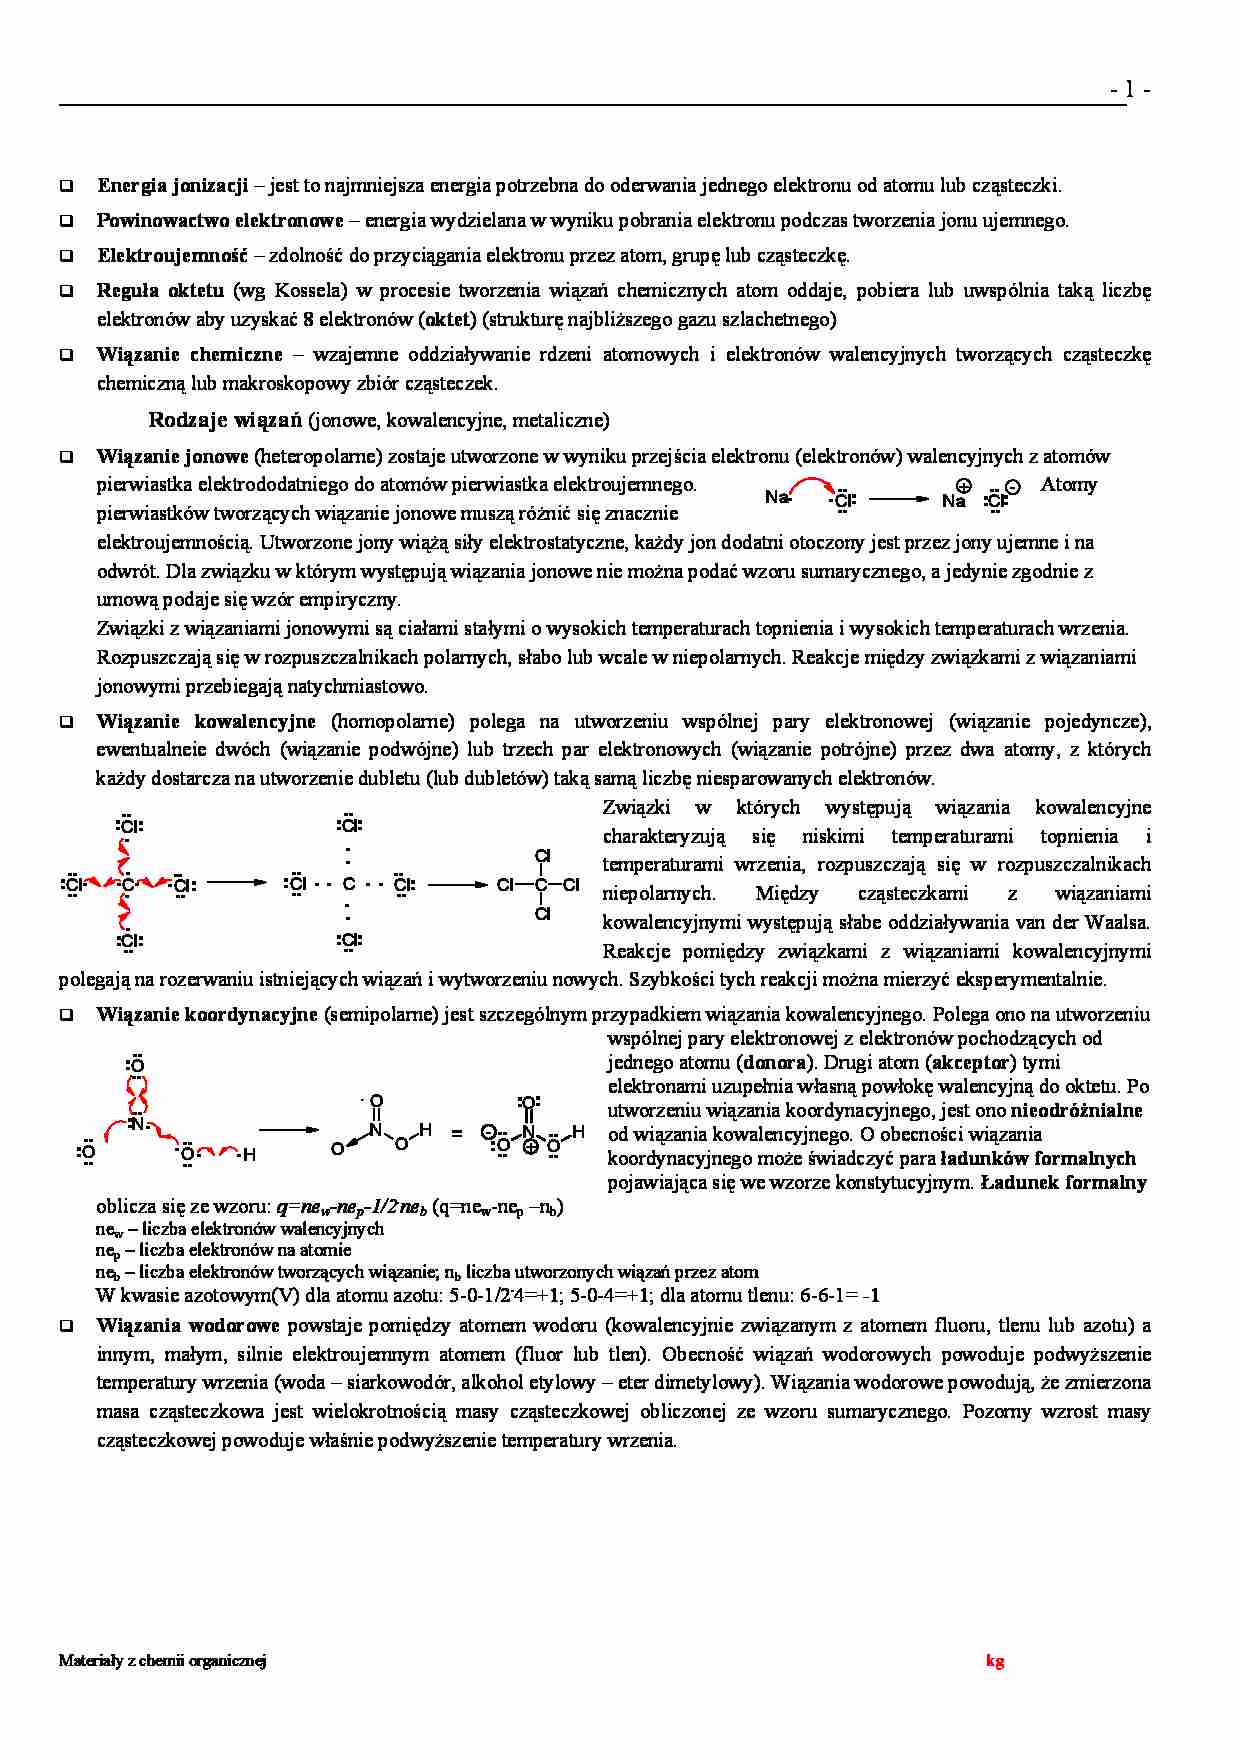 chemia organiczna  - omówienie  - strona 1